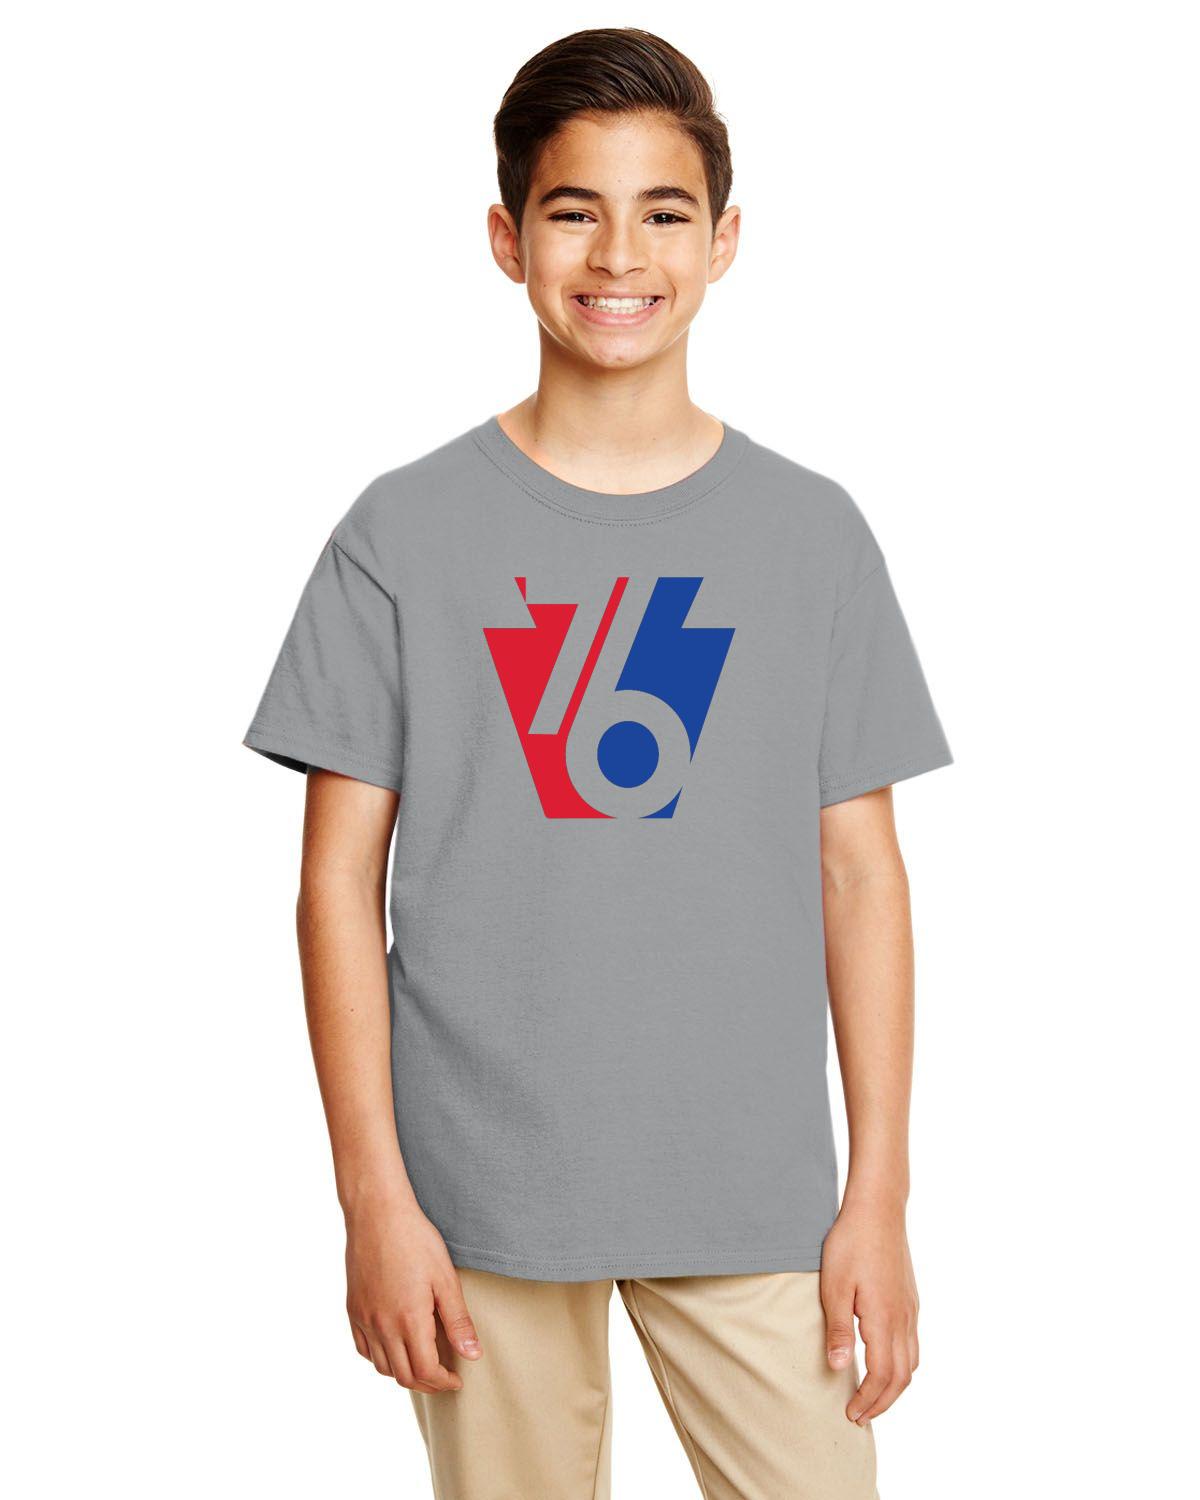 Keystone 76 Youth Tee (Gildan Youth Softstyle 7.5 oz./lin. yd. T-Shirt | G645B)